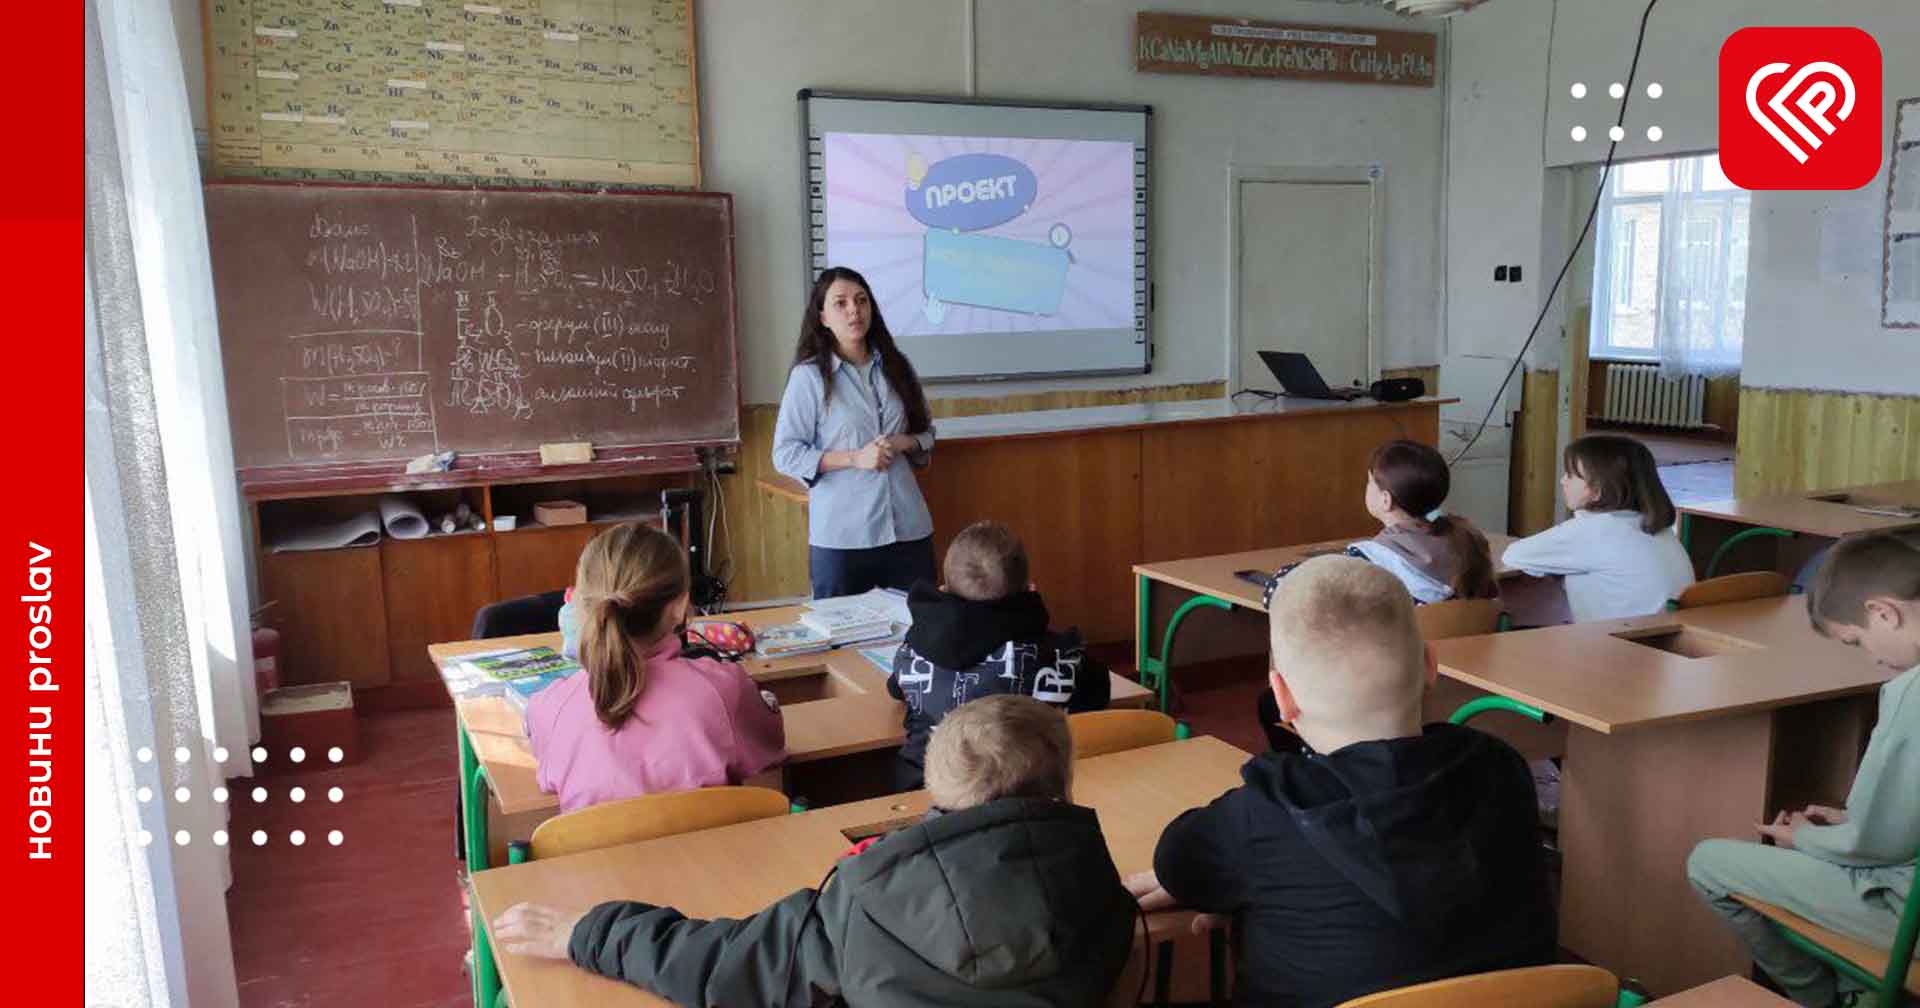 Відбулися презентації проєкту «Моя громада разом»: ініціатива спрямована на налагодження співпраці між сільською та міською молоддю Переяславської громади